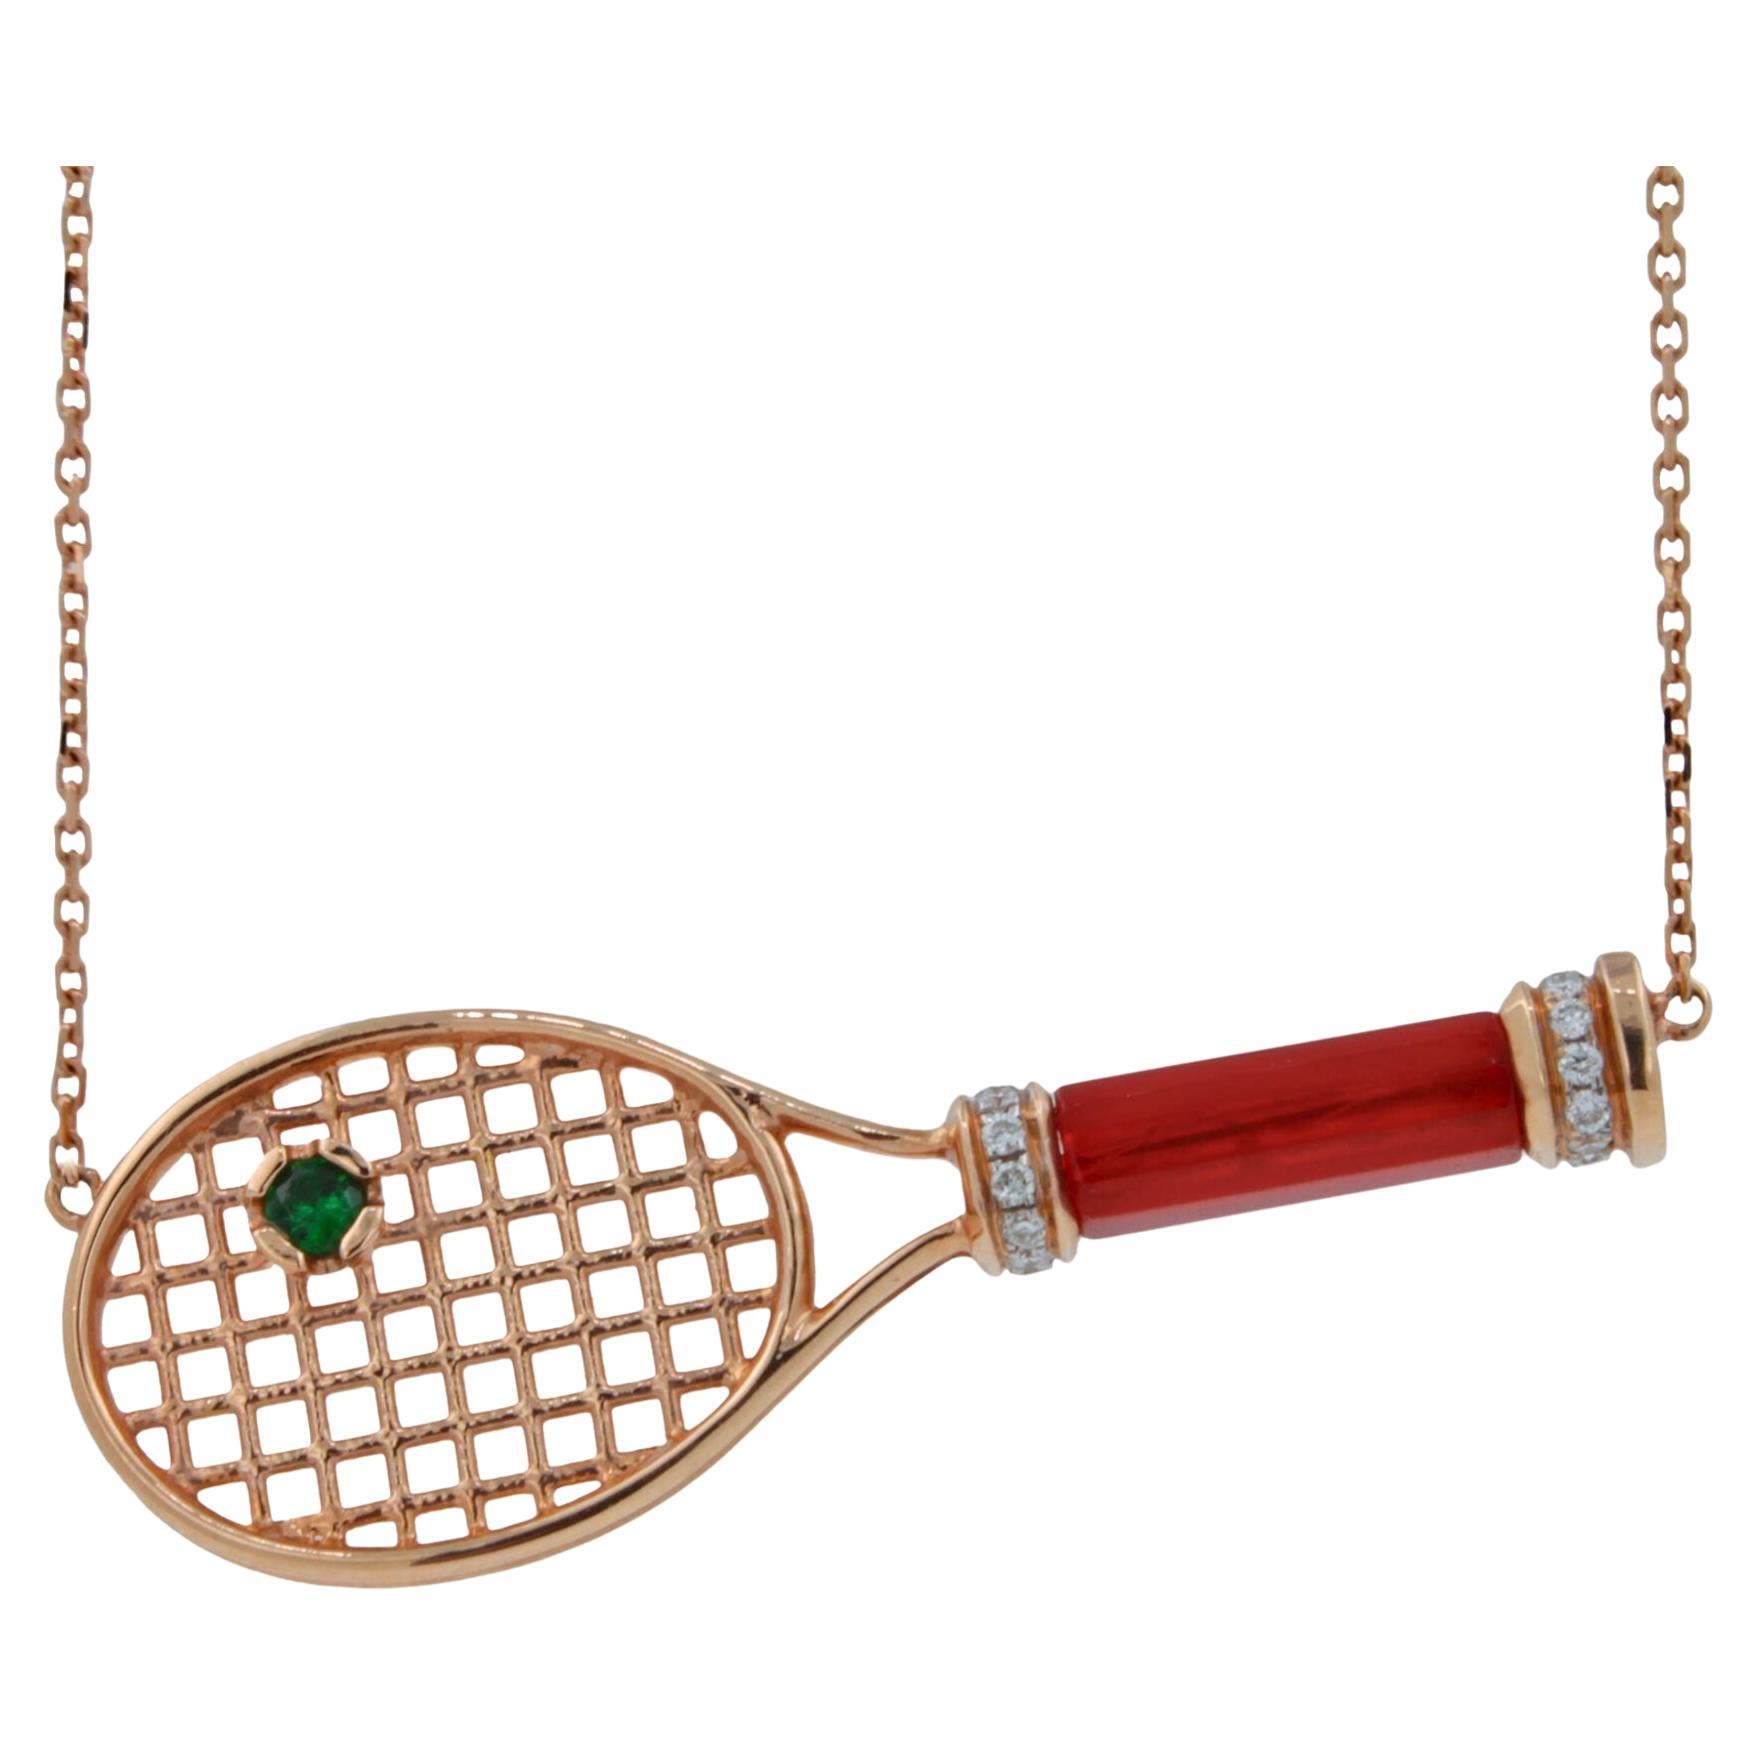 Collier pendentif raquette de tennis en or rose avec poignée en cornaline rouge et boule d'émeraude verte